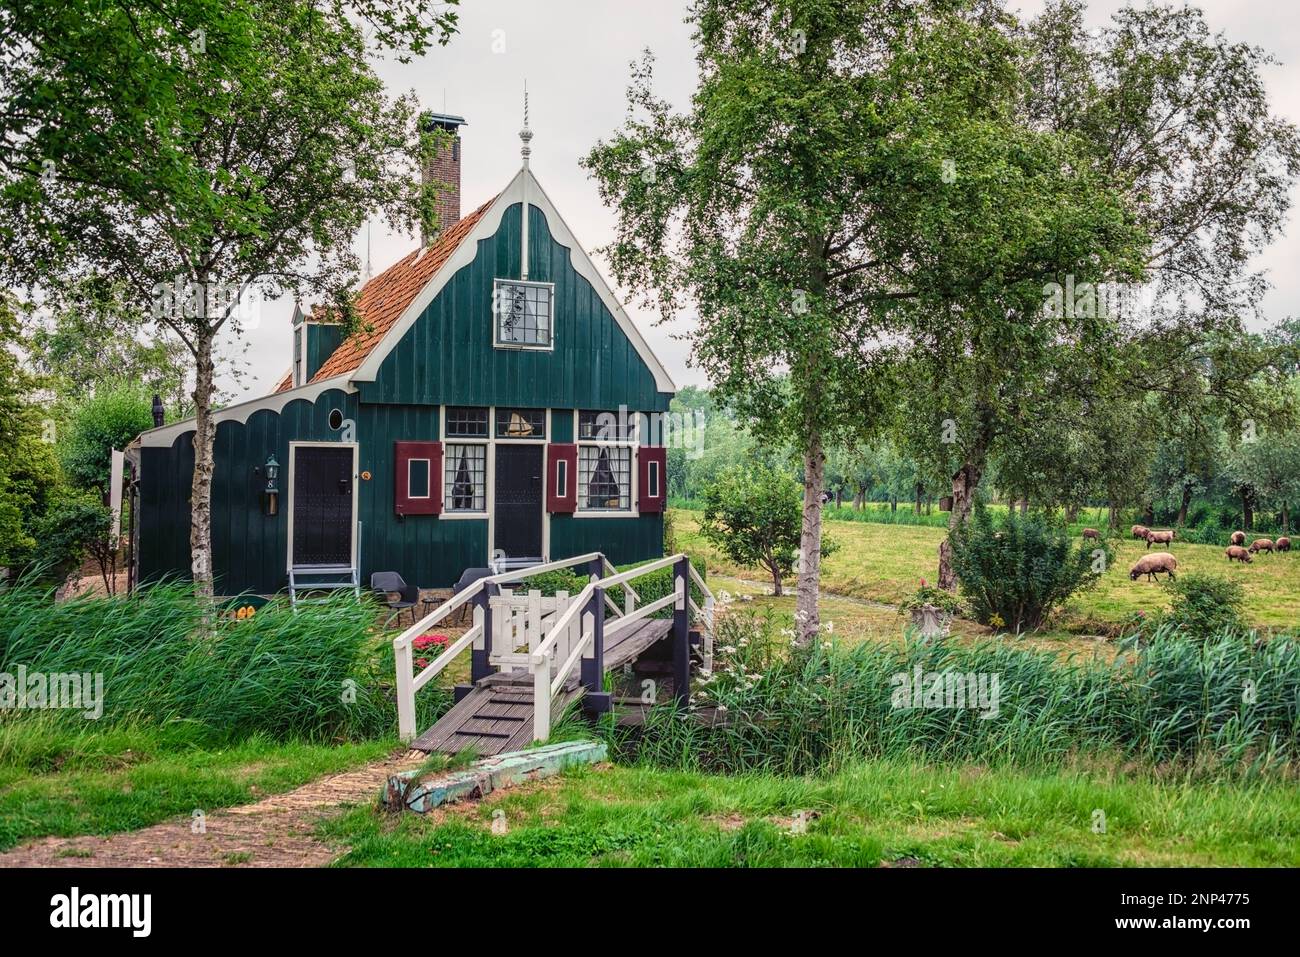 Zaanse Schans village in the Netherlands Stock Photo